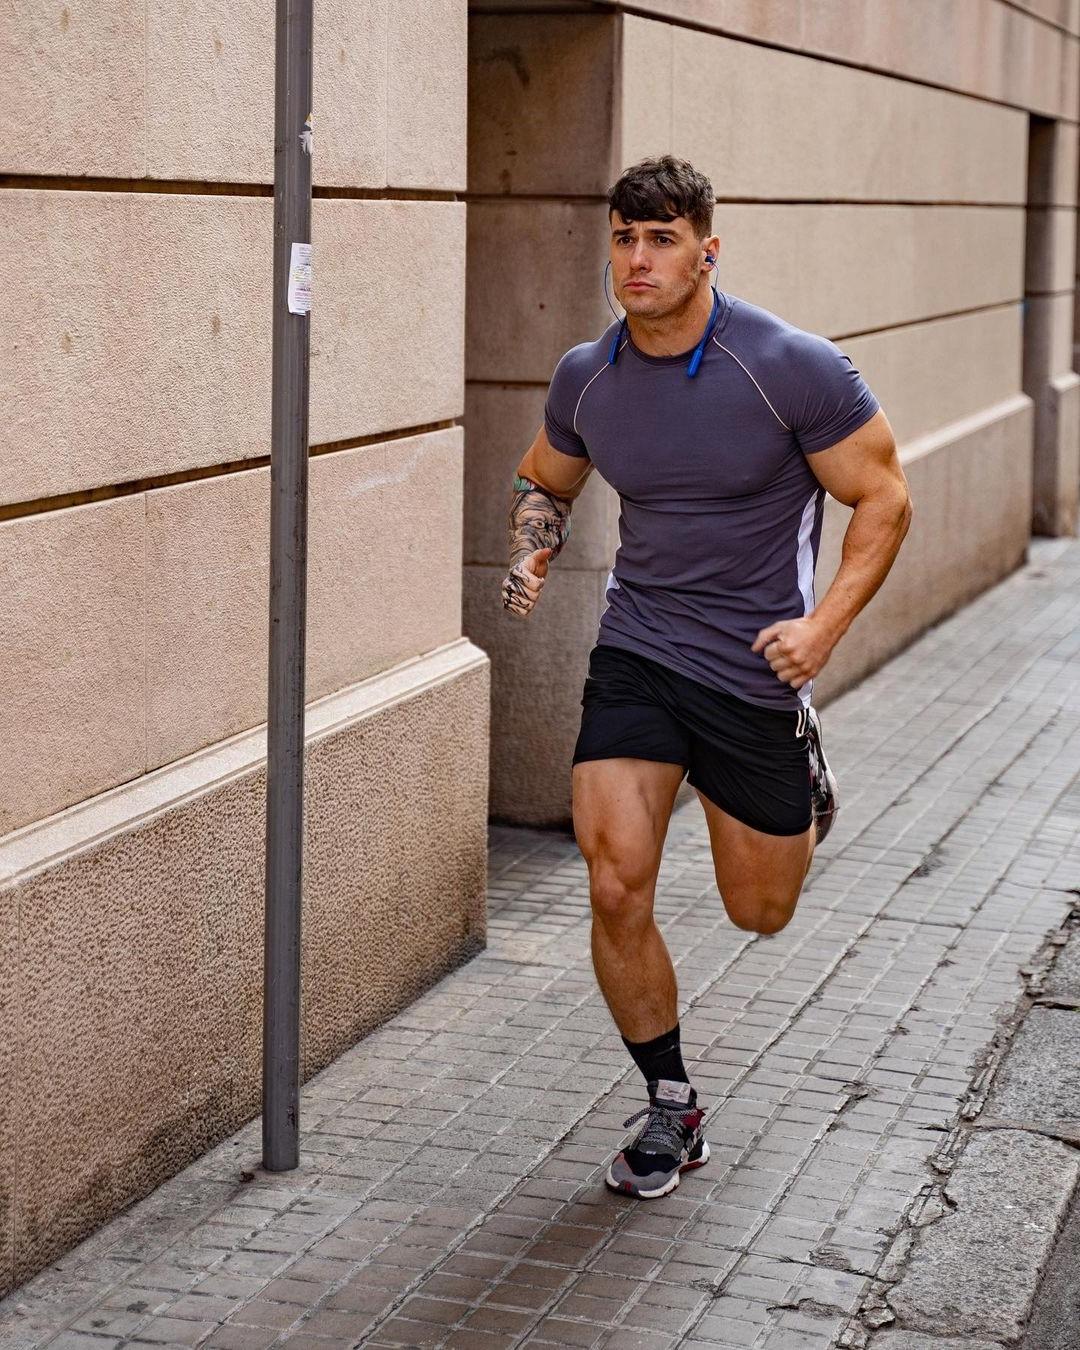 hot-muscular-guys-neighbor-running-owen-harrison-huge-strong-thighs-masculine-street-bro